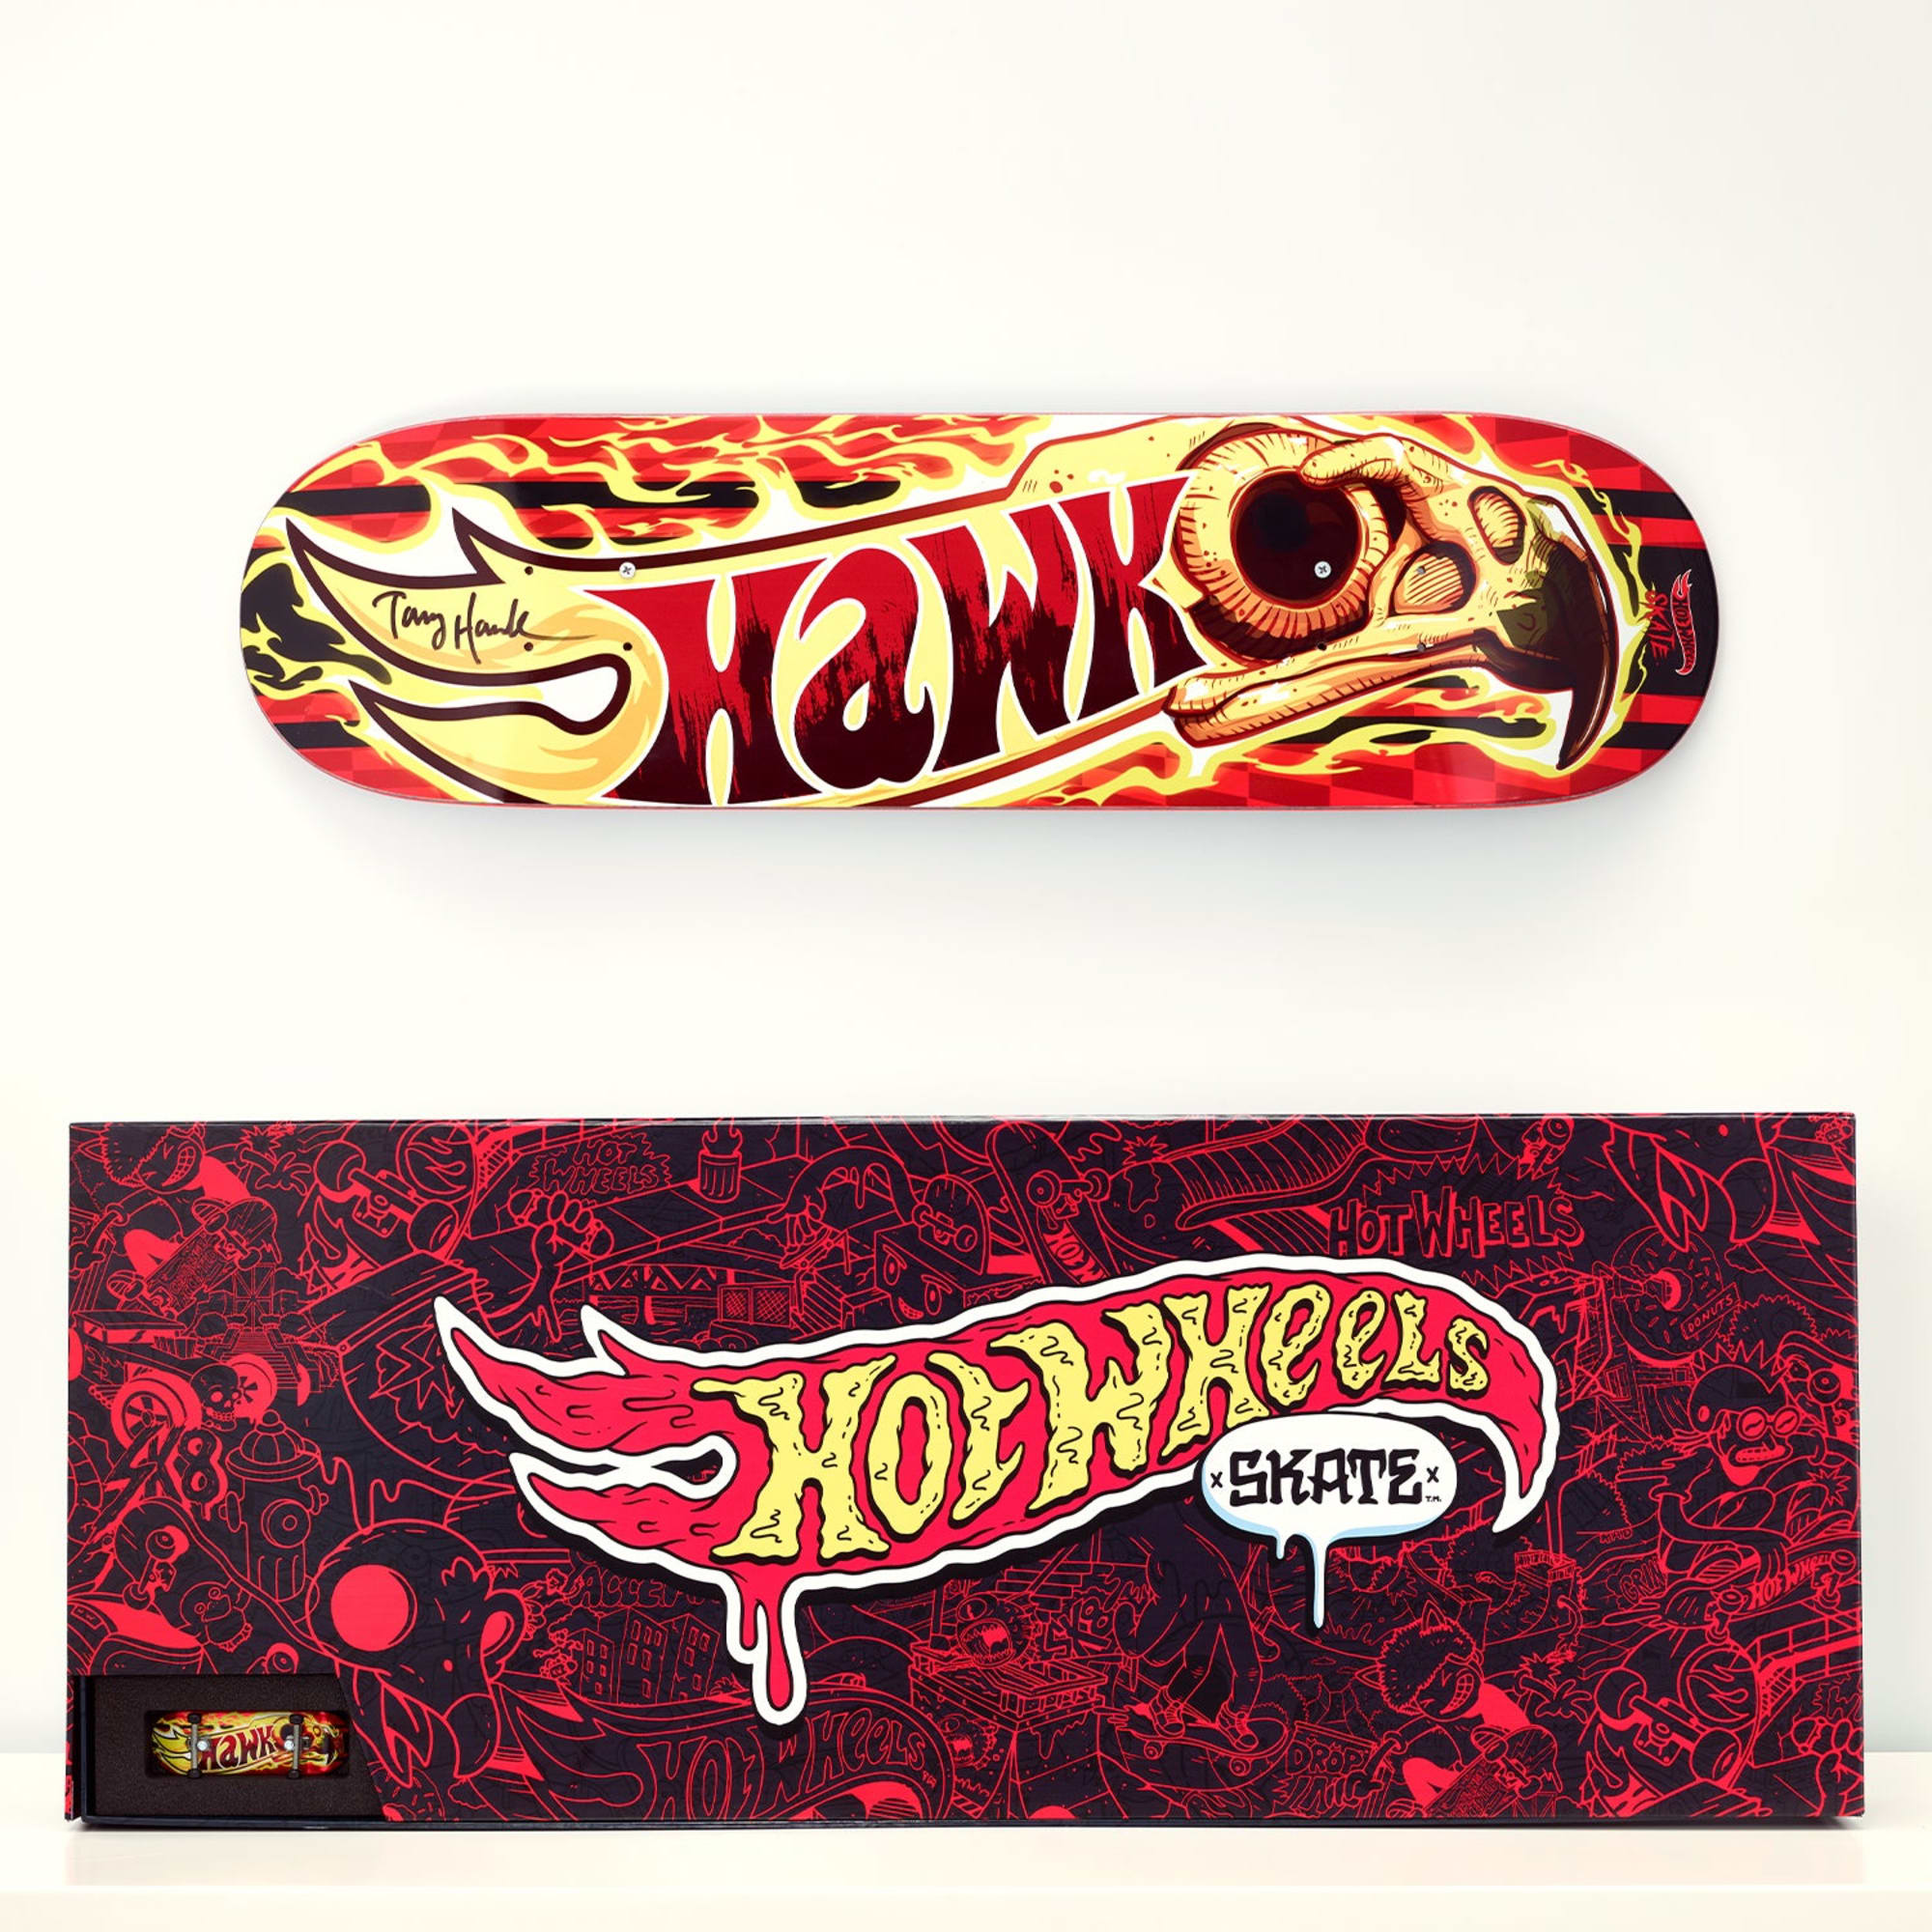 Tony Hawk x Hot Wheels Skate, Wildfire Deck & Fingerboard